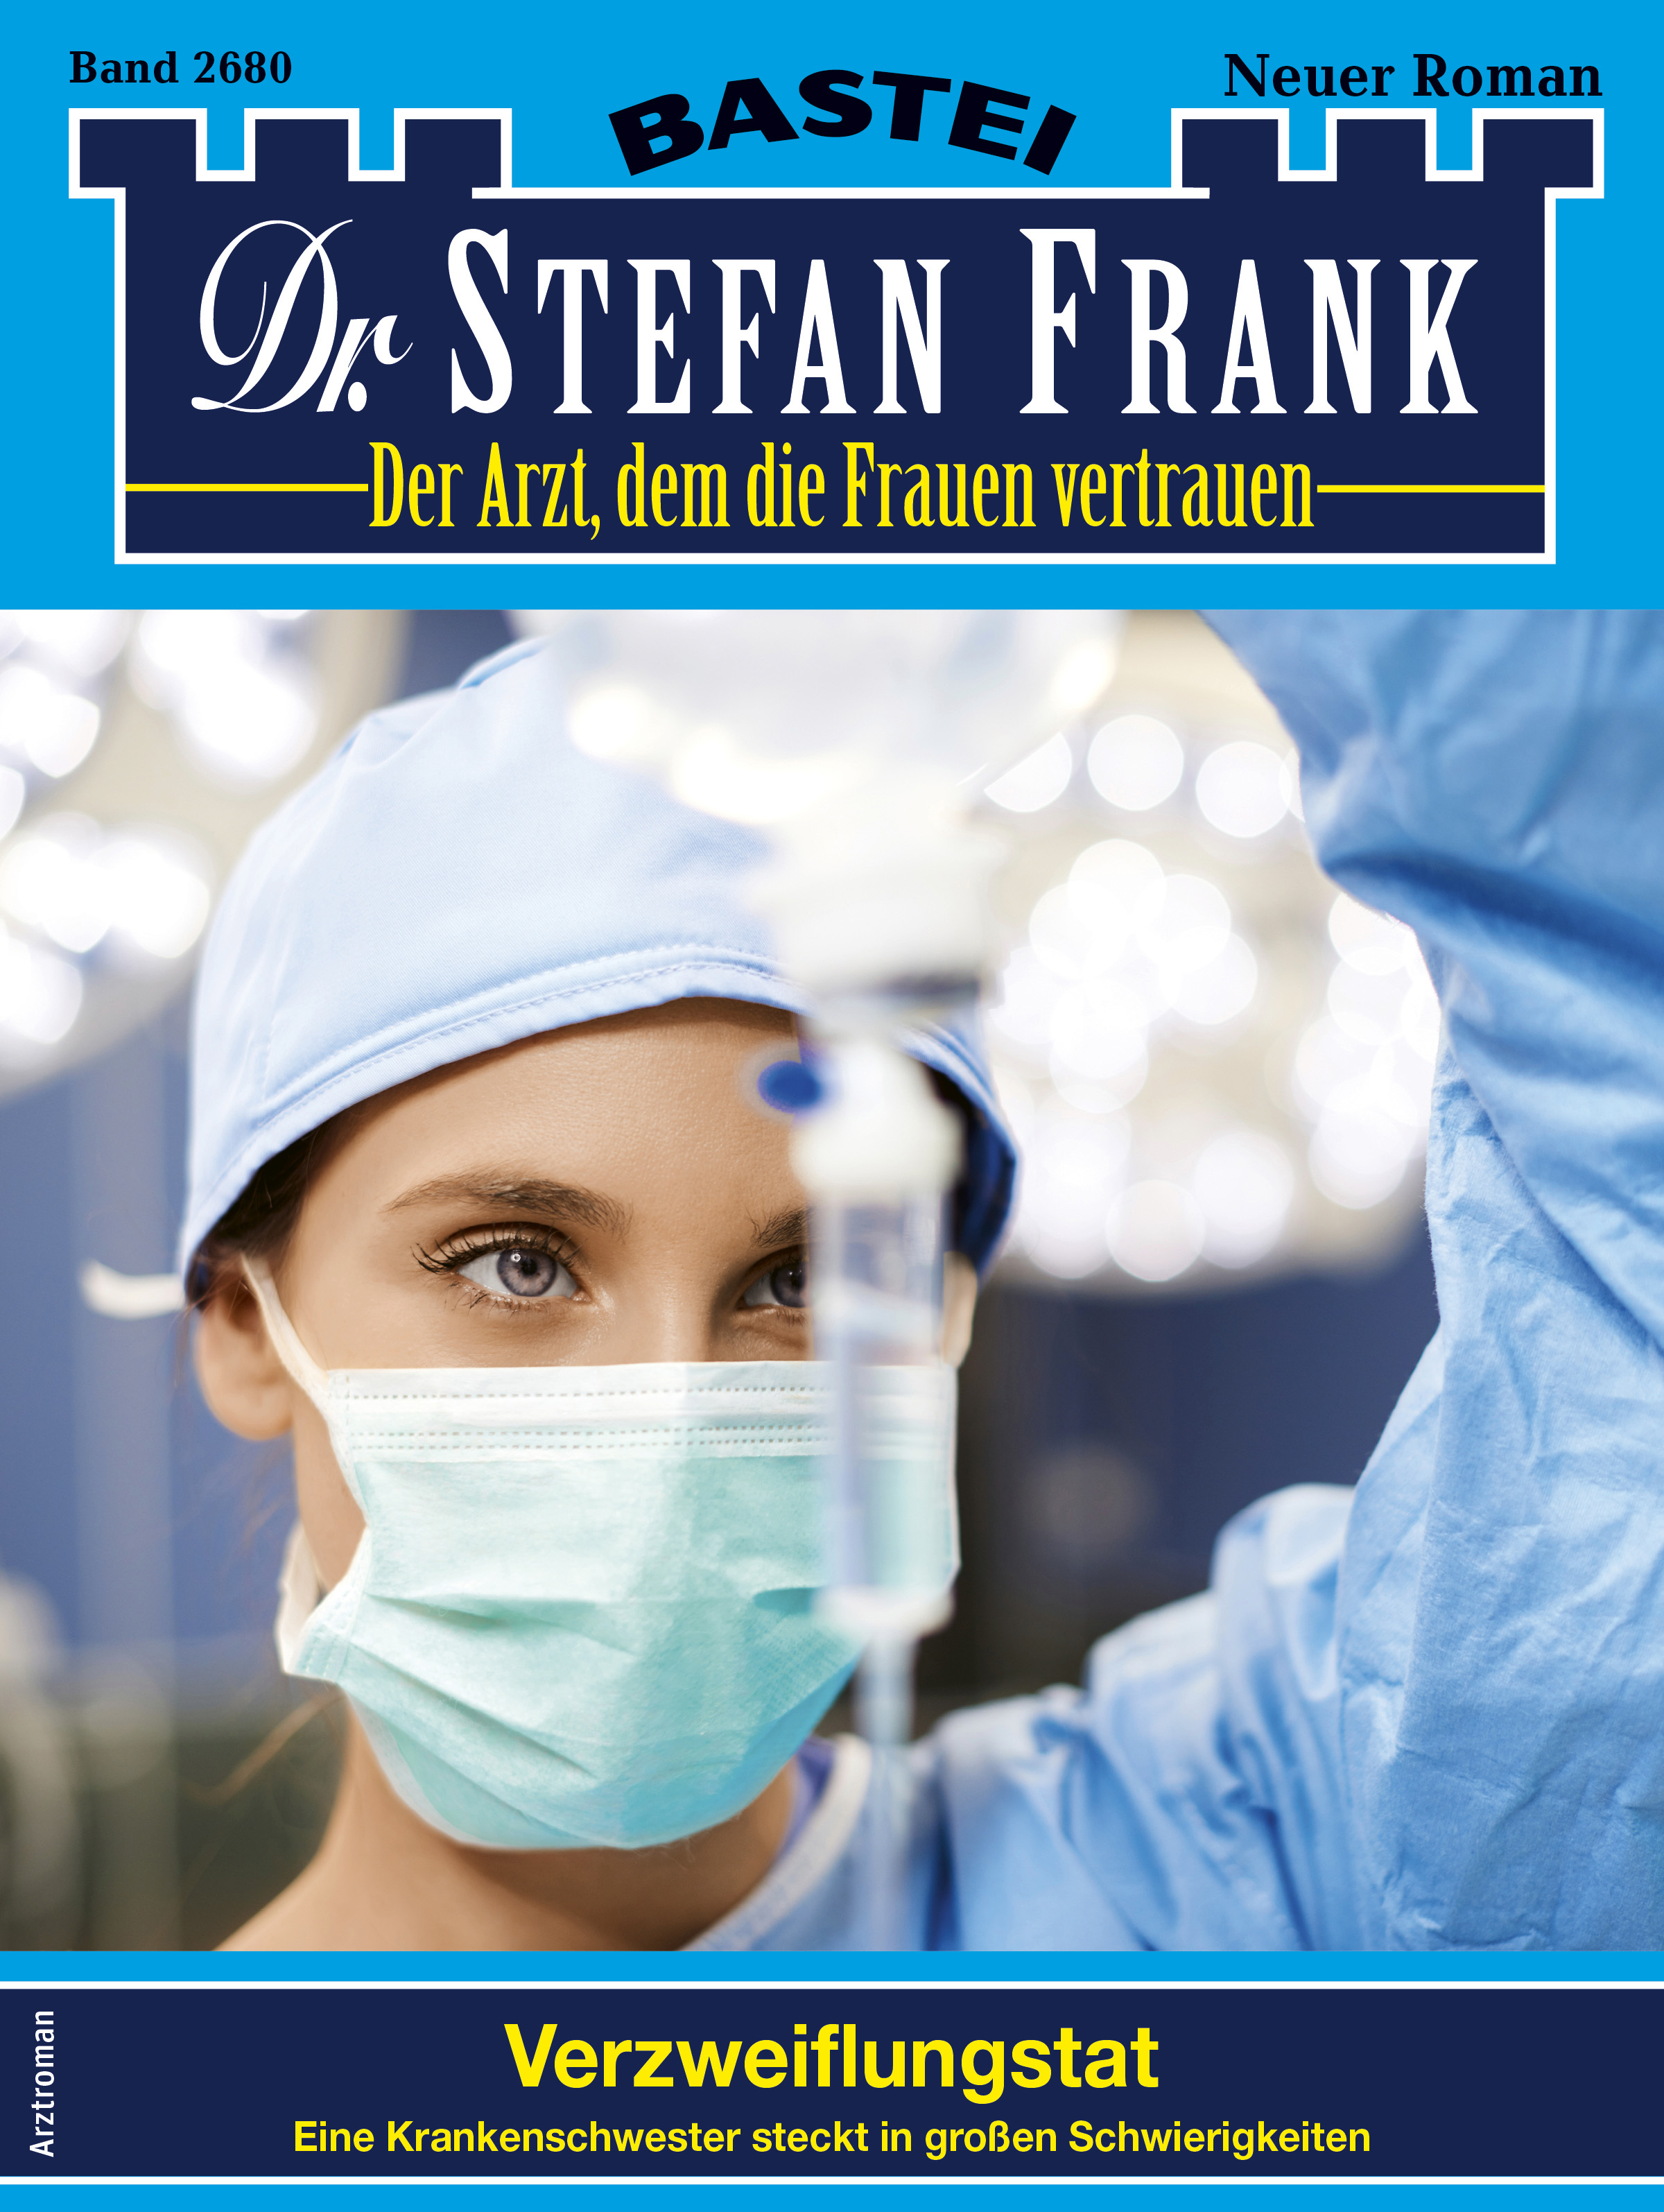 Dr. Stefan Frank 2680